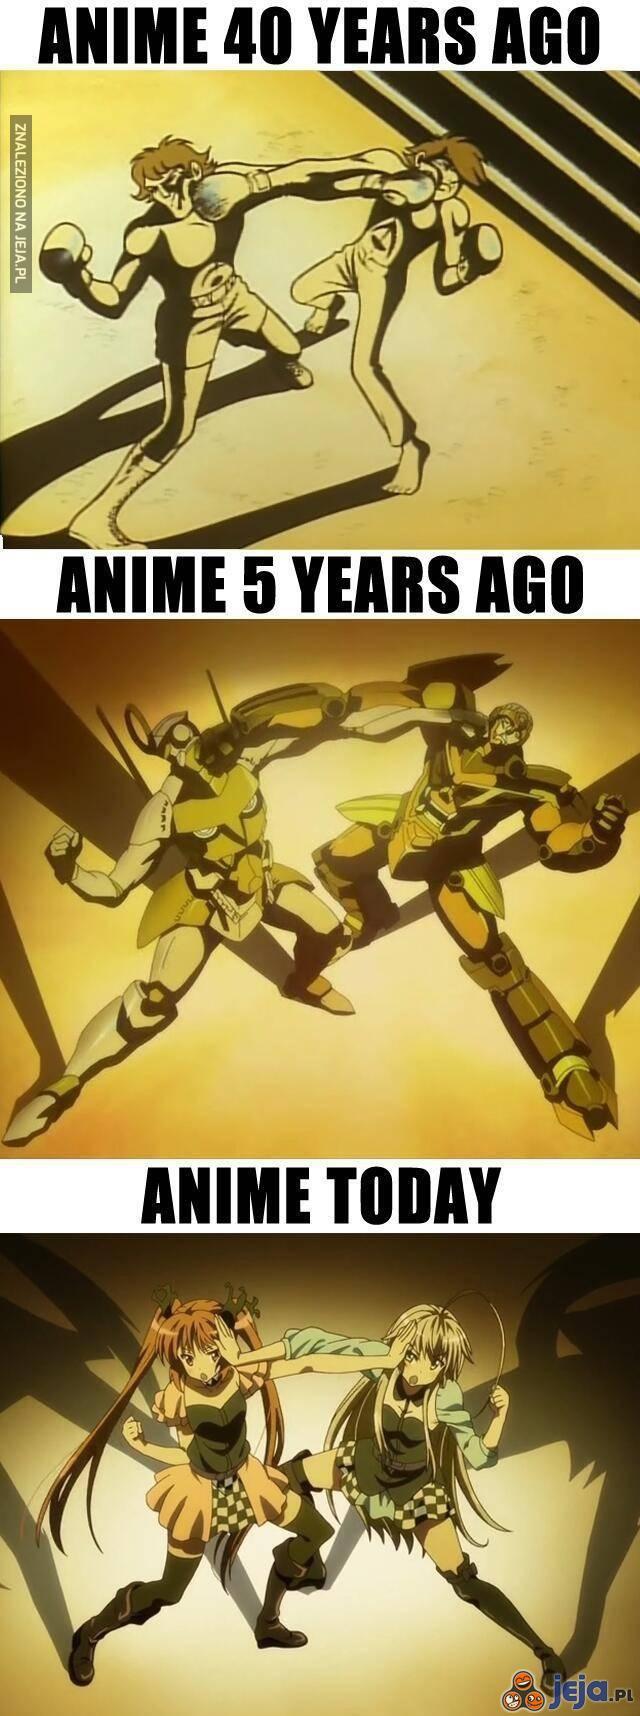 Anime kiedyś i dziś